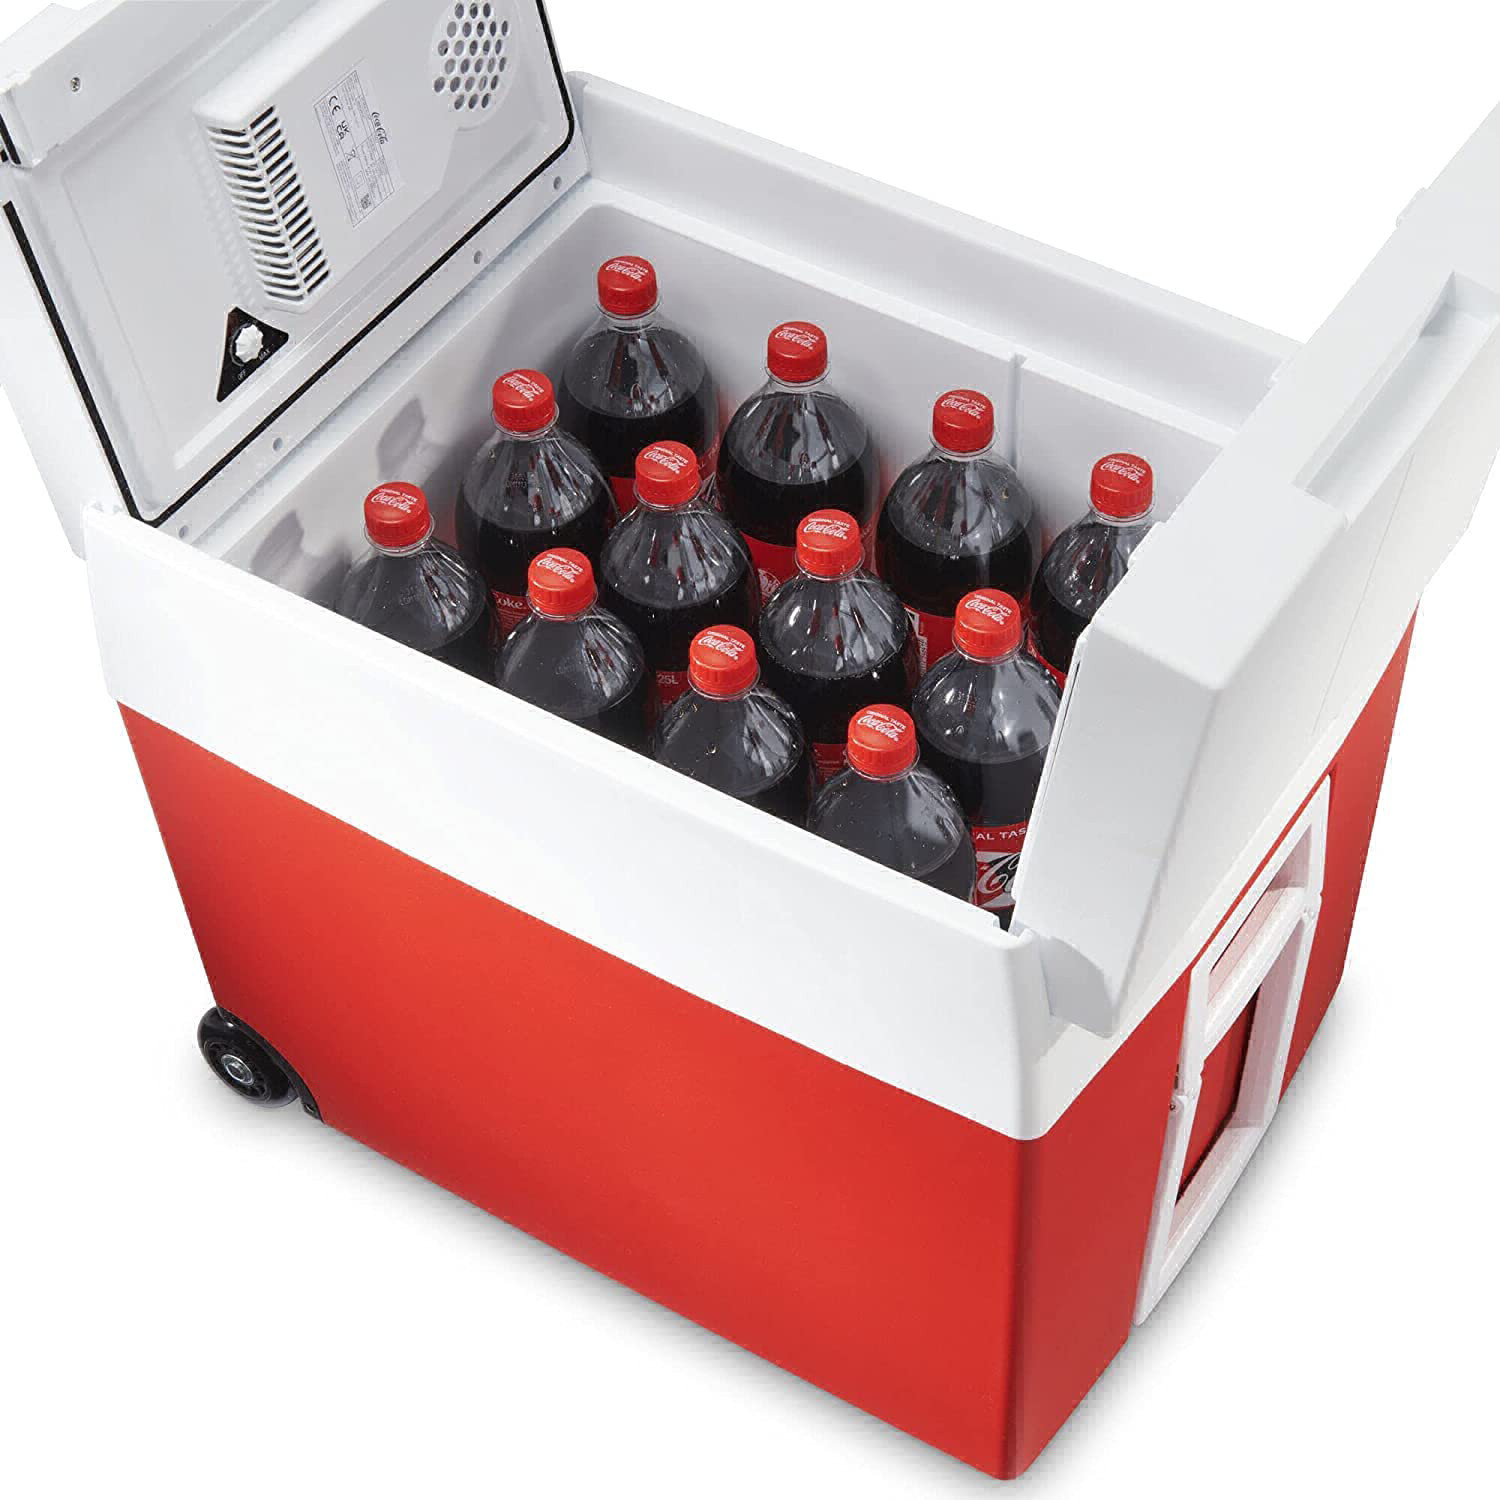 Mobicool MT48W Coca Cola Kühlbox